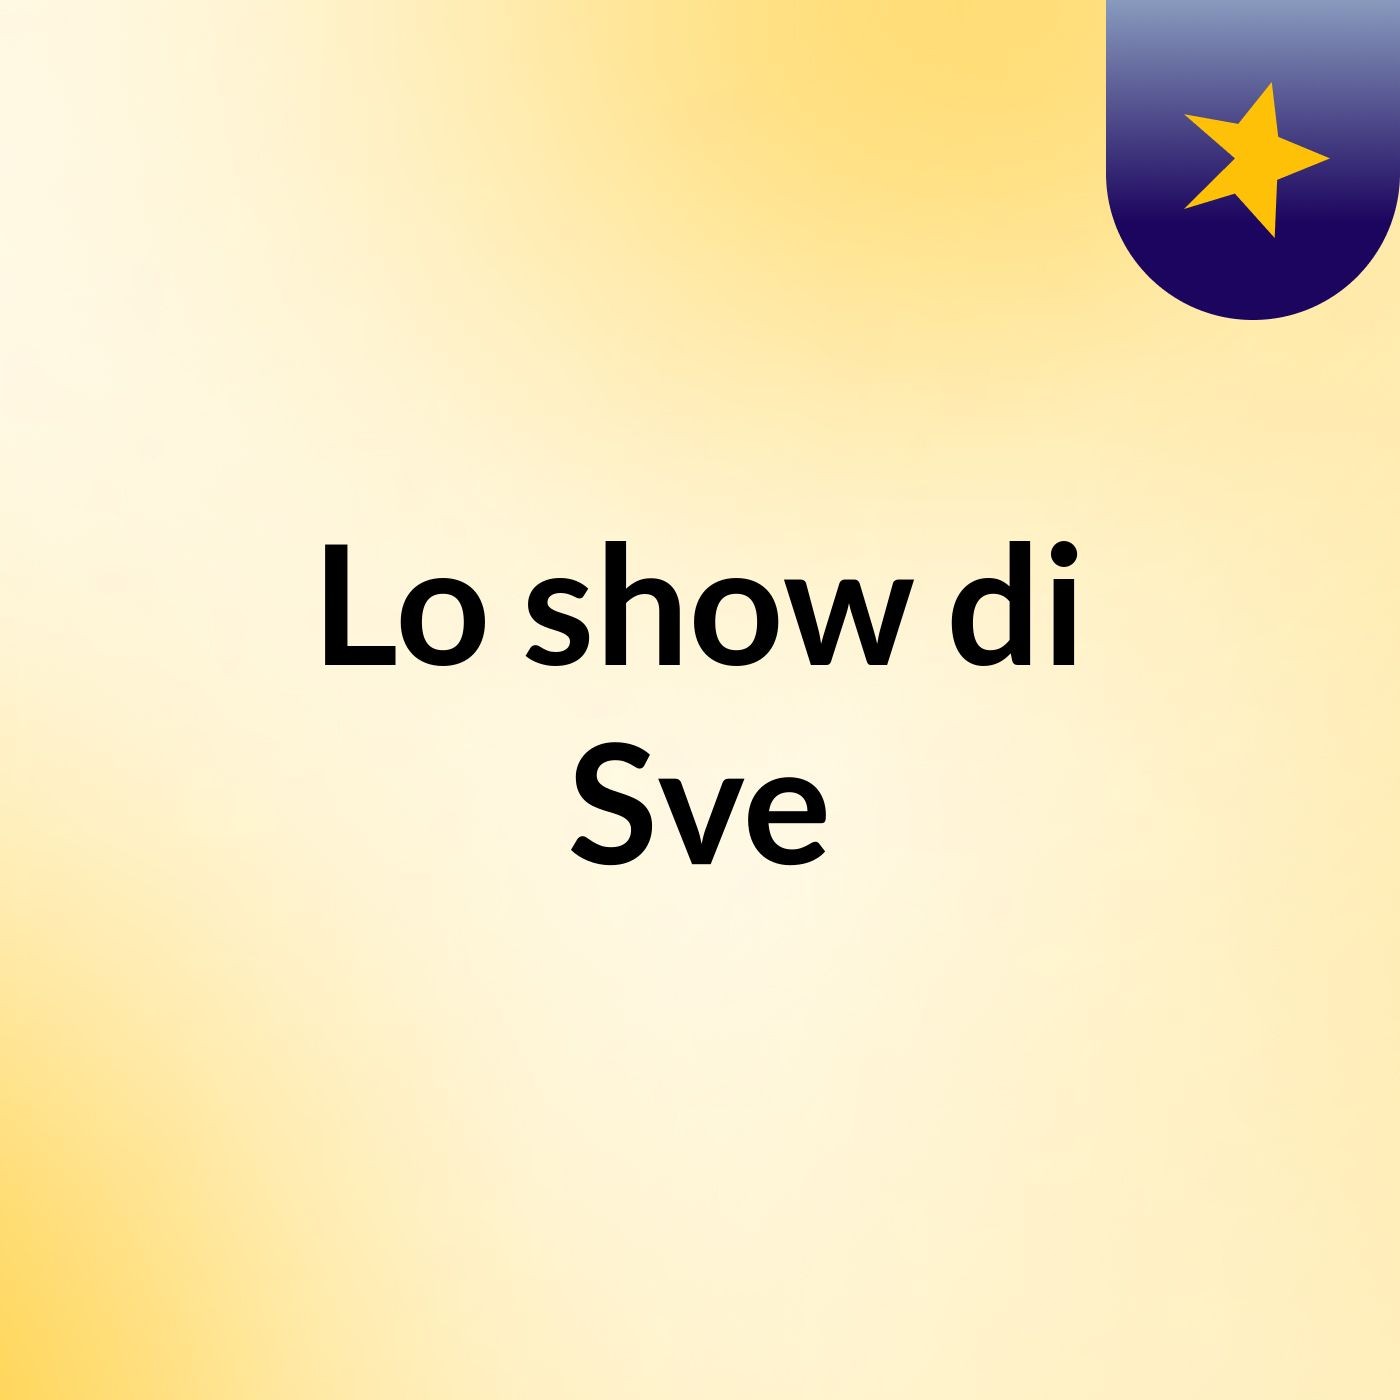 Lo show di Sve